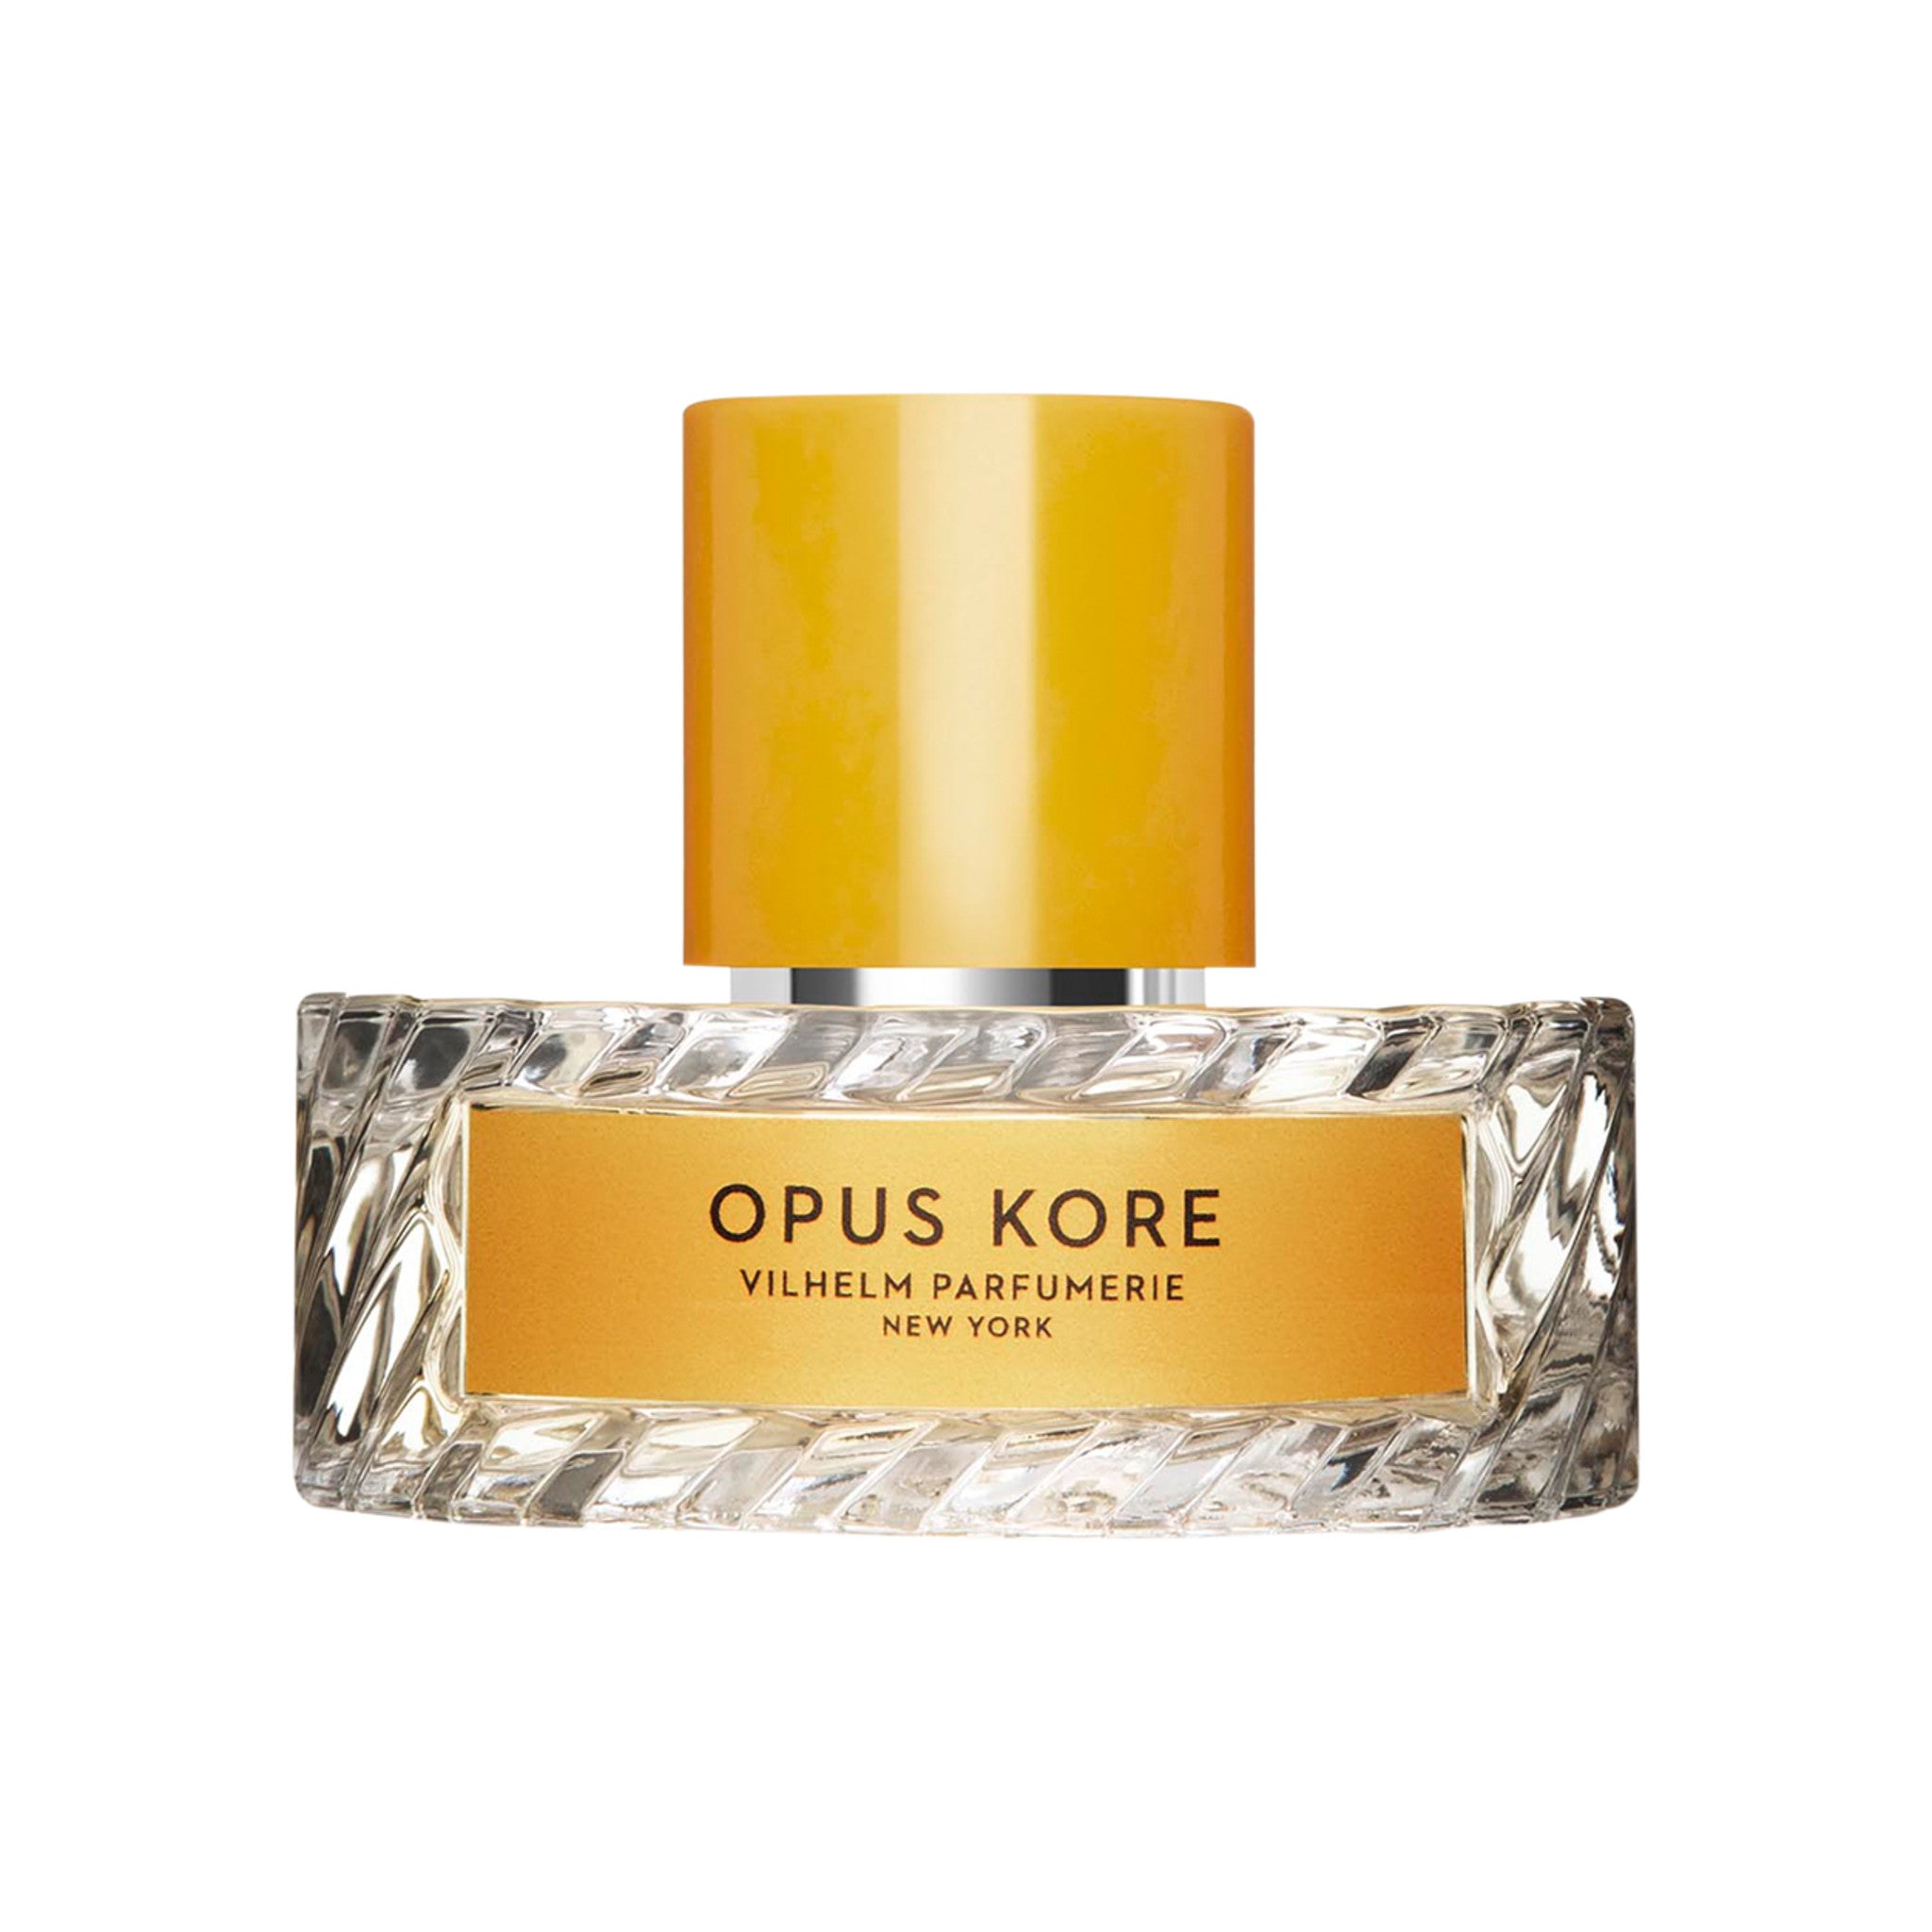 Vilhelm Parfumerie Opus Kore Eau de Parfum Size variant: 50 ml main image.